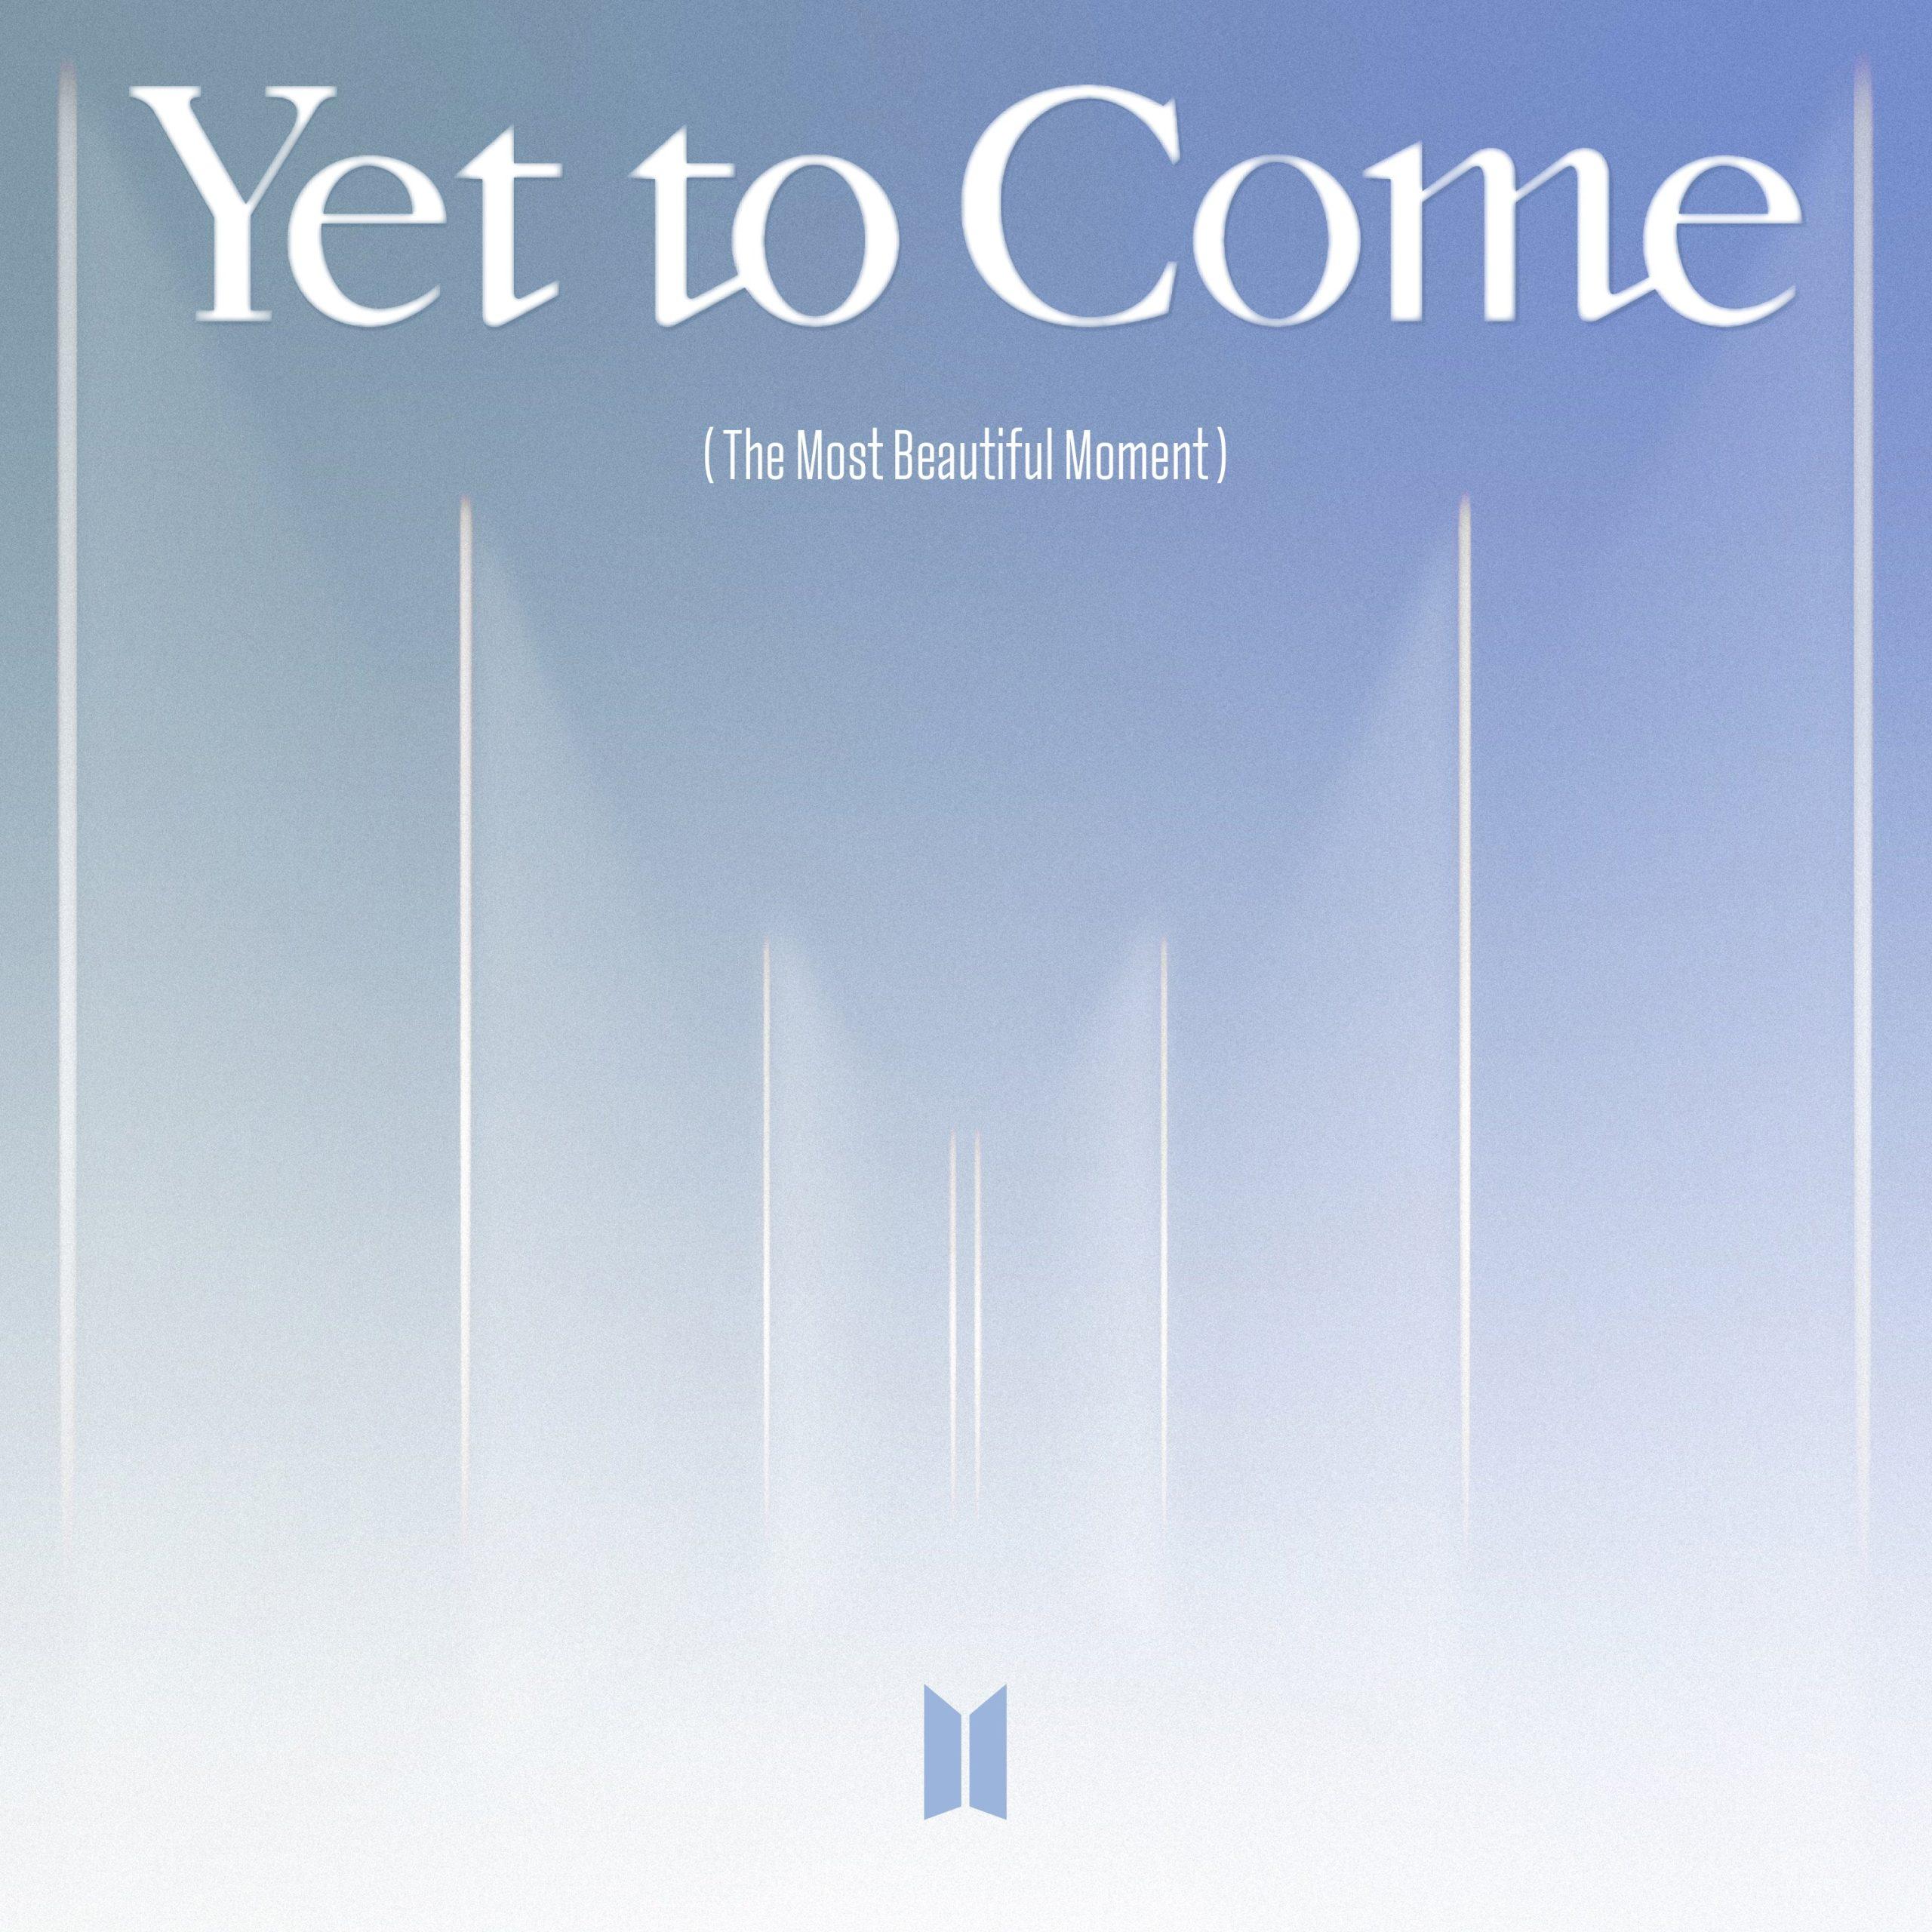 Poster ca khúc chủ đề 'Yet to Come" (ảnh: Internet)